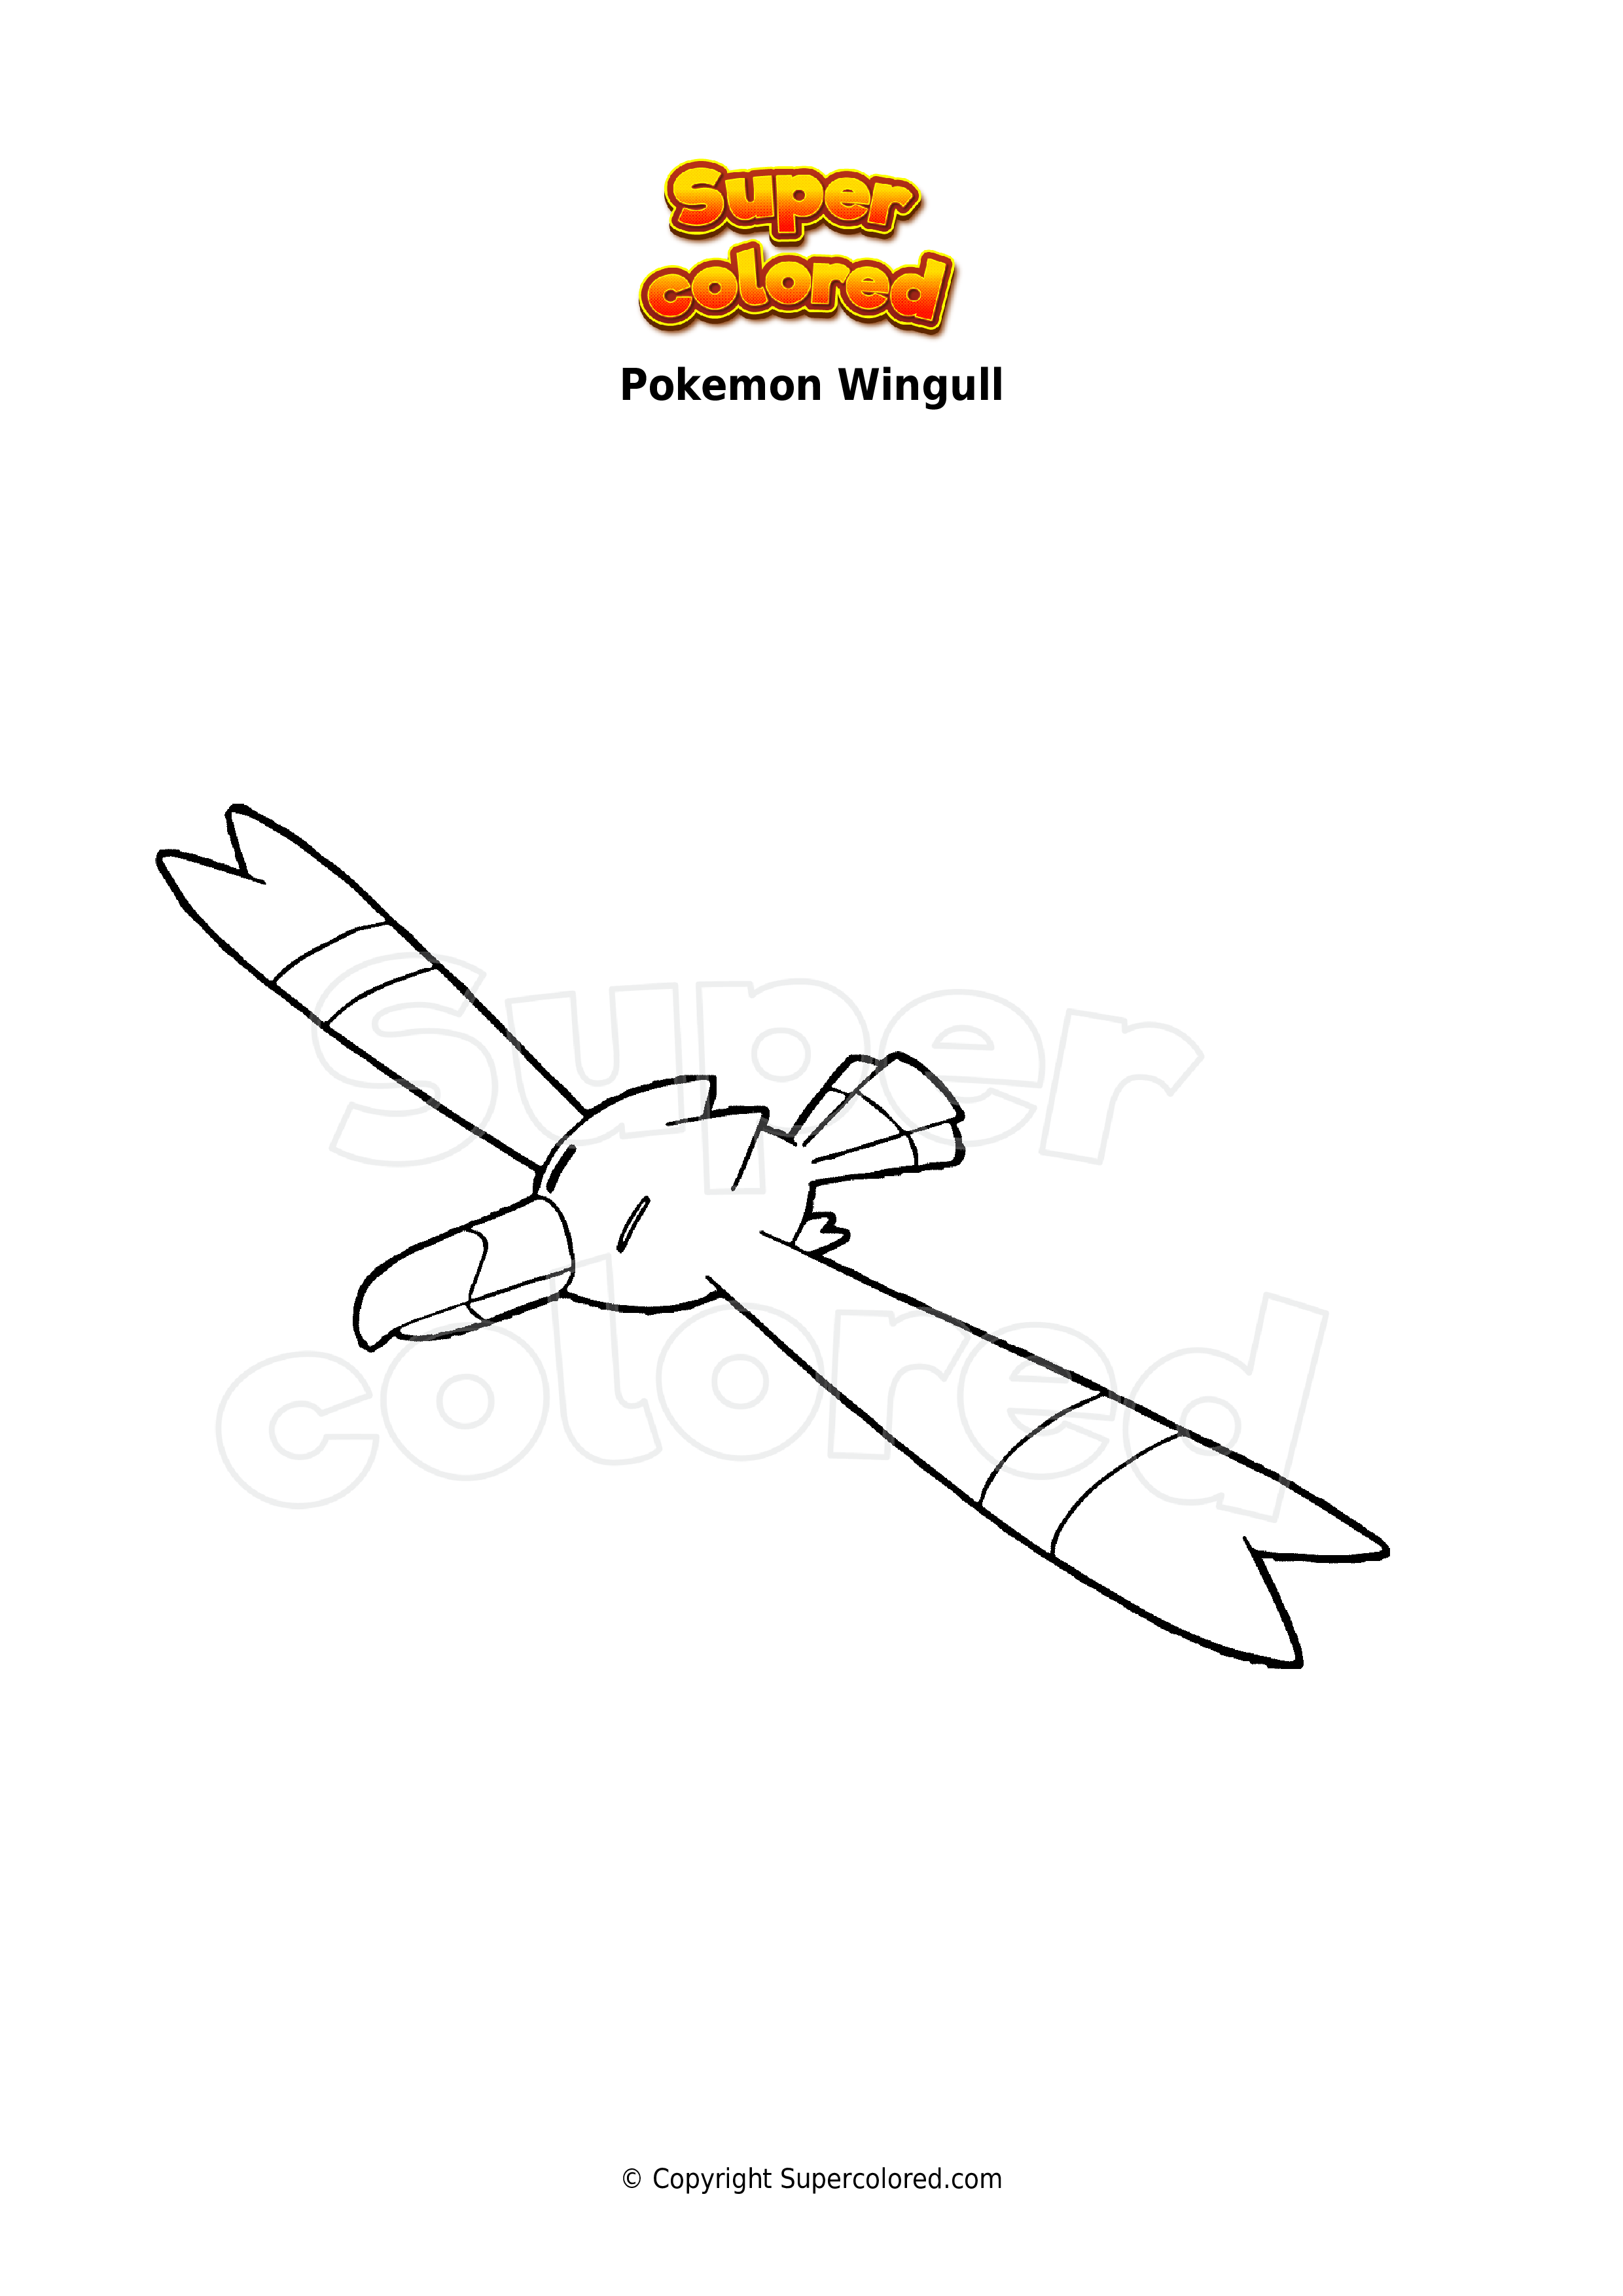 Coloring page Pokemon Wingull - Supercolored.com